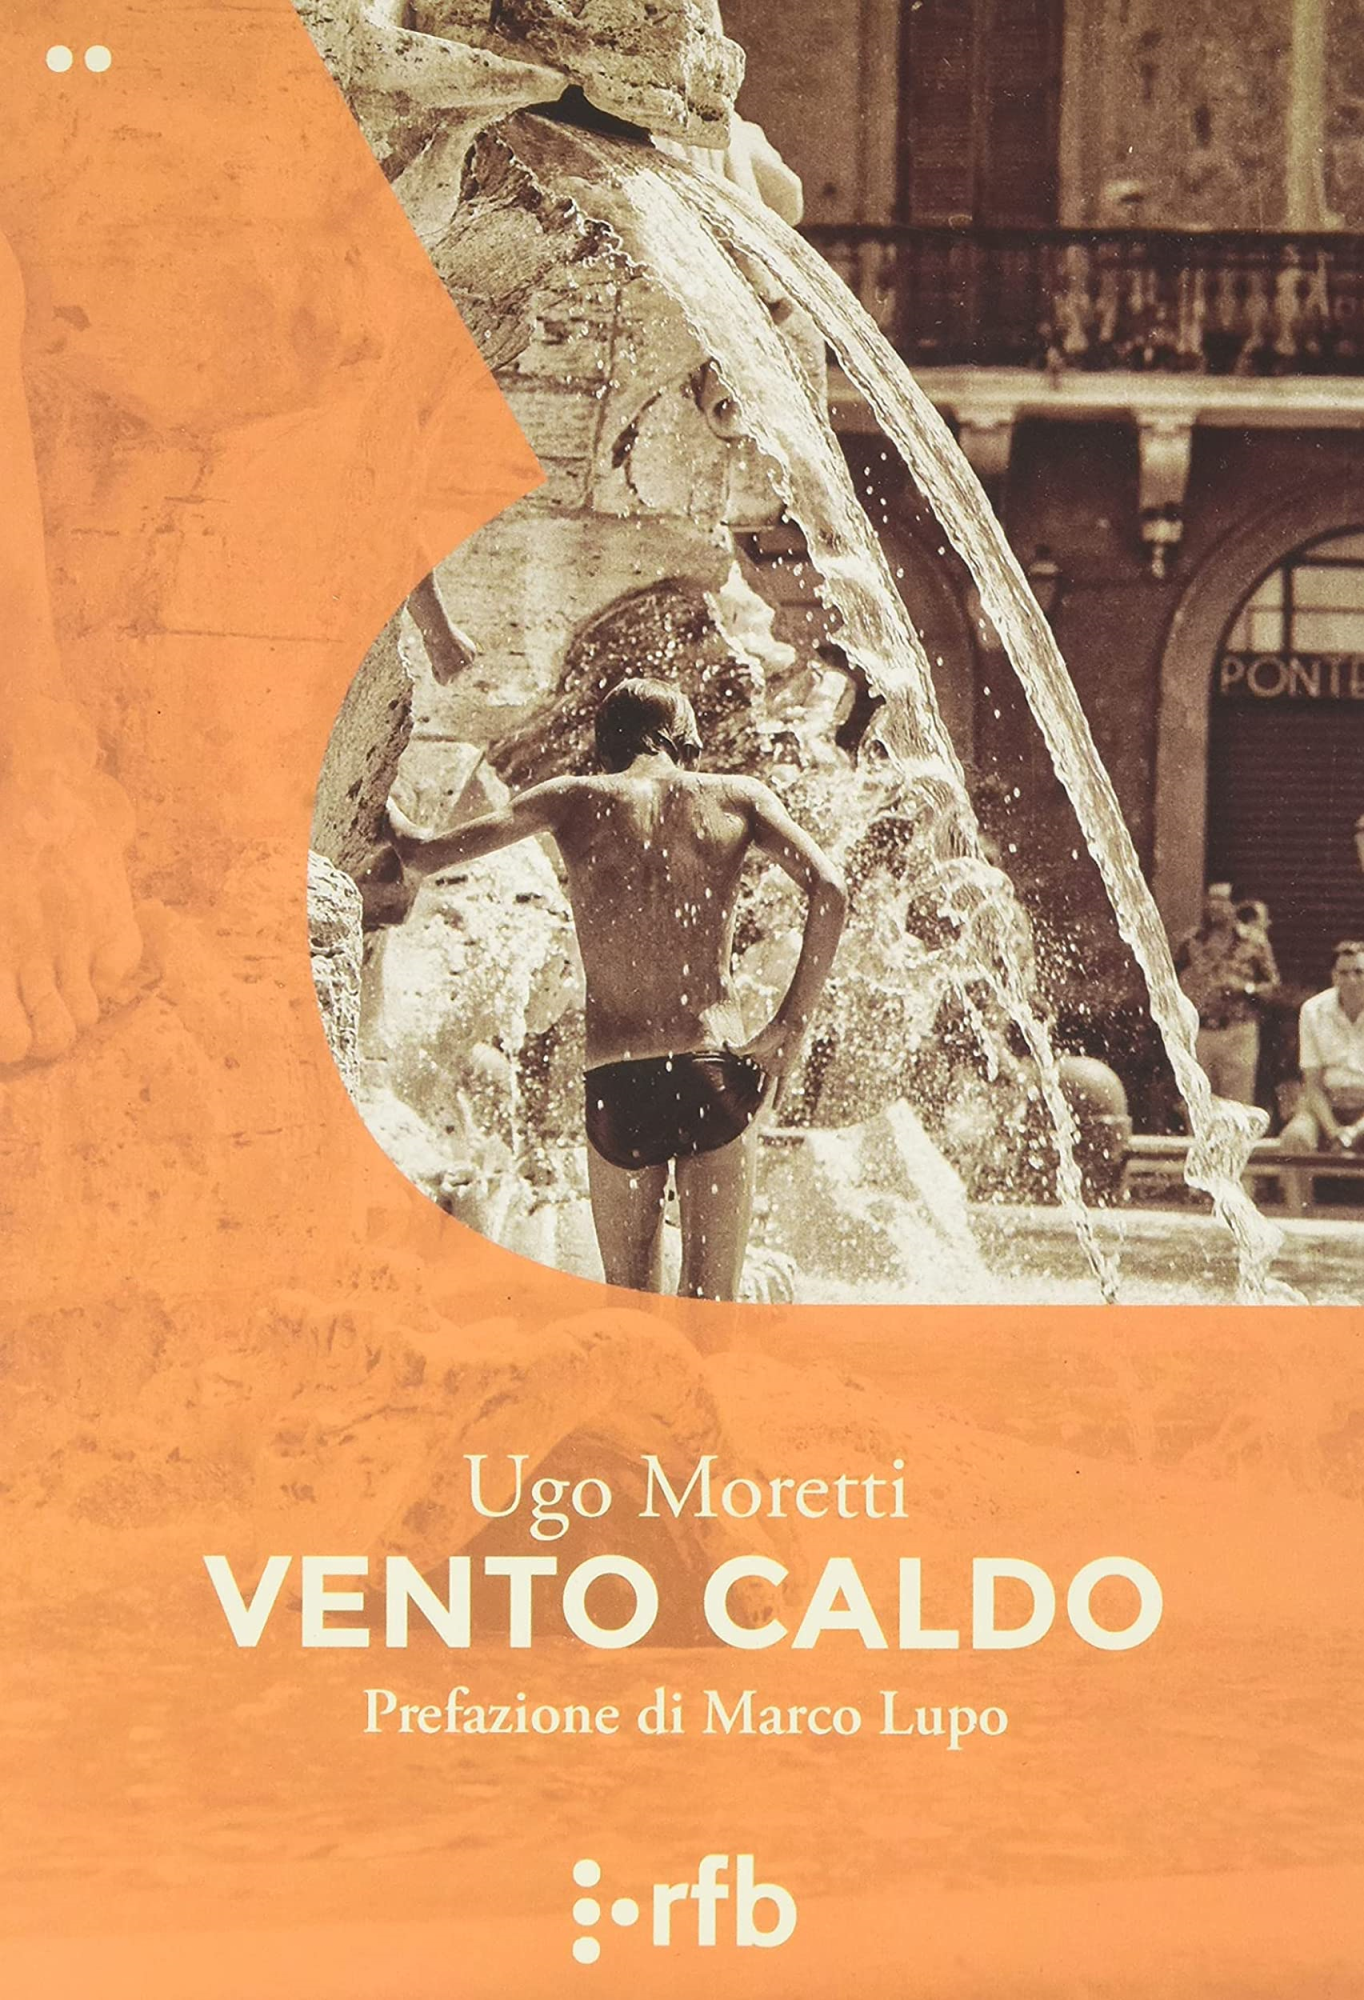 Libri Moretti Ugo - Vento Caldo NUOVO SIGILLATO, EDIZIONE DEL 04/06/2021 SUBITO DISPONIBILE